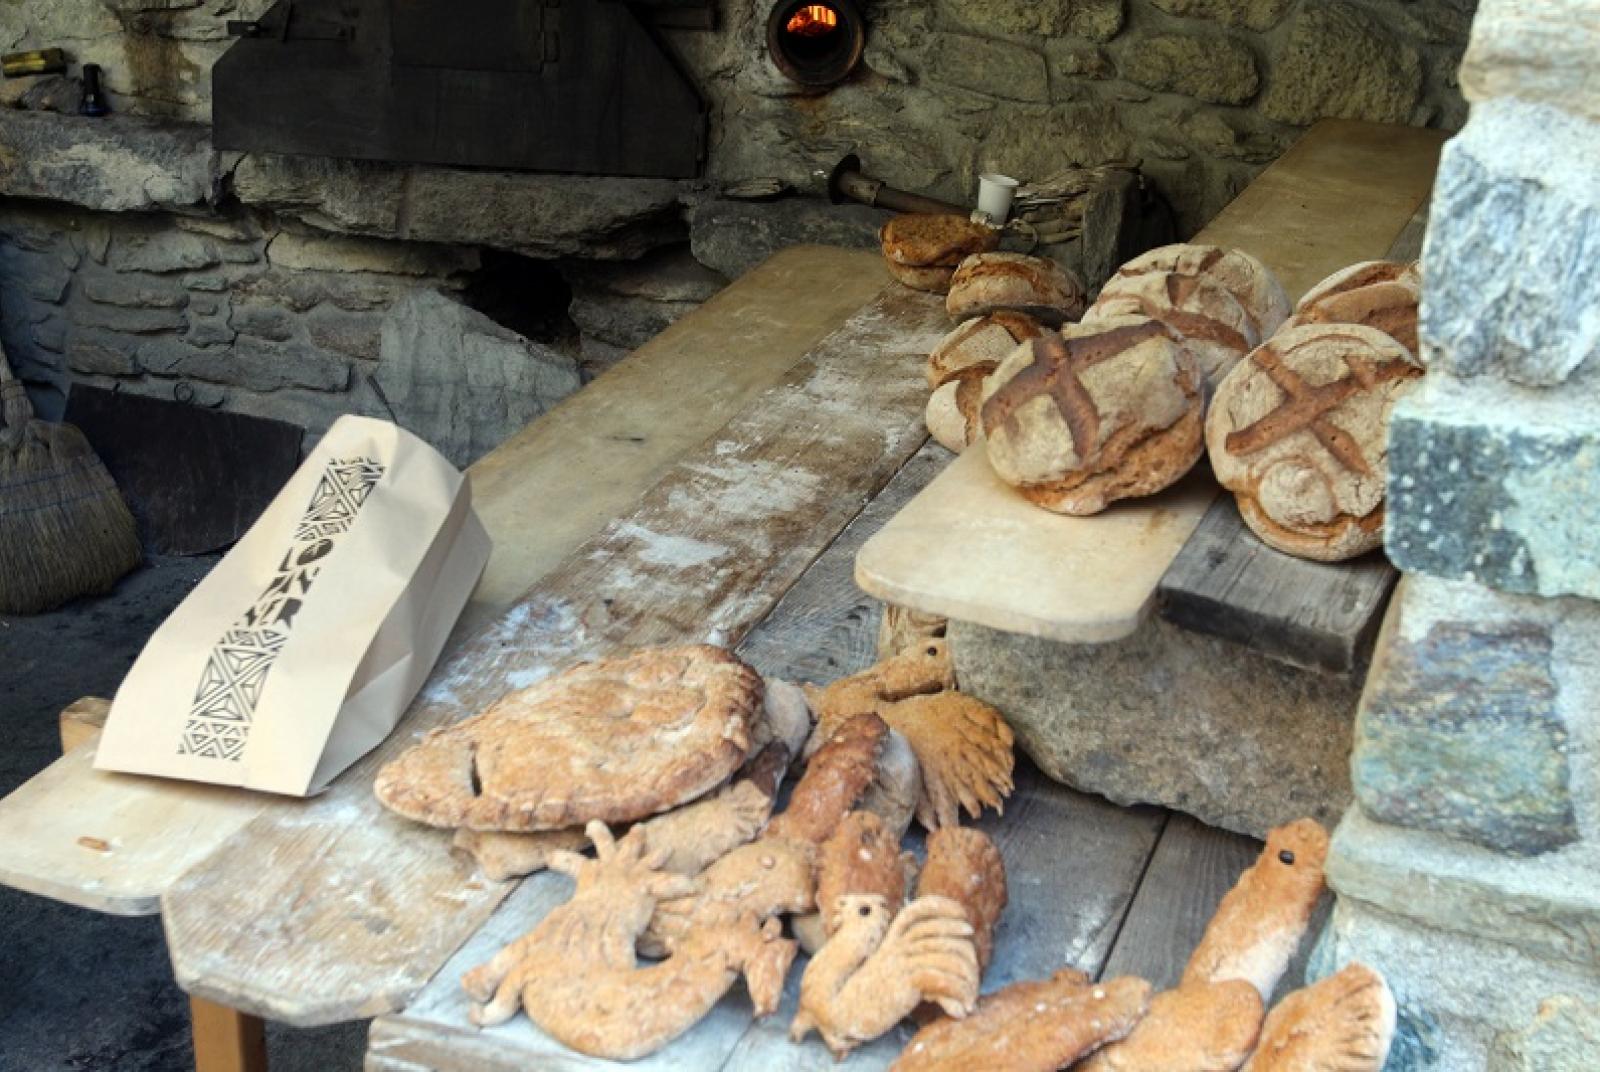 Lo Pan Ner - Row bread in Ayas